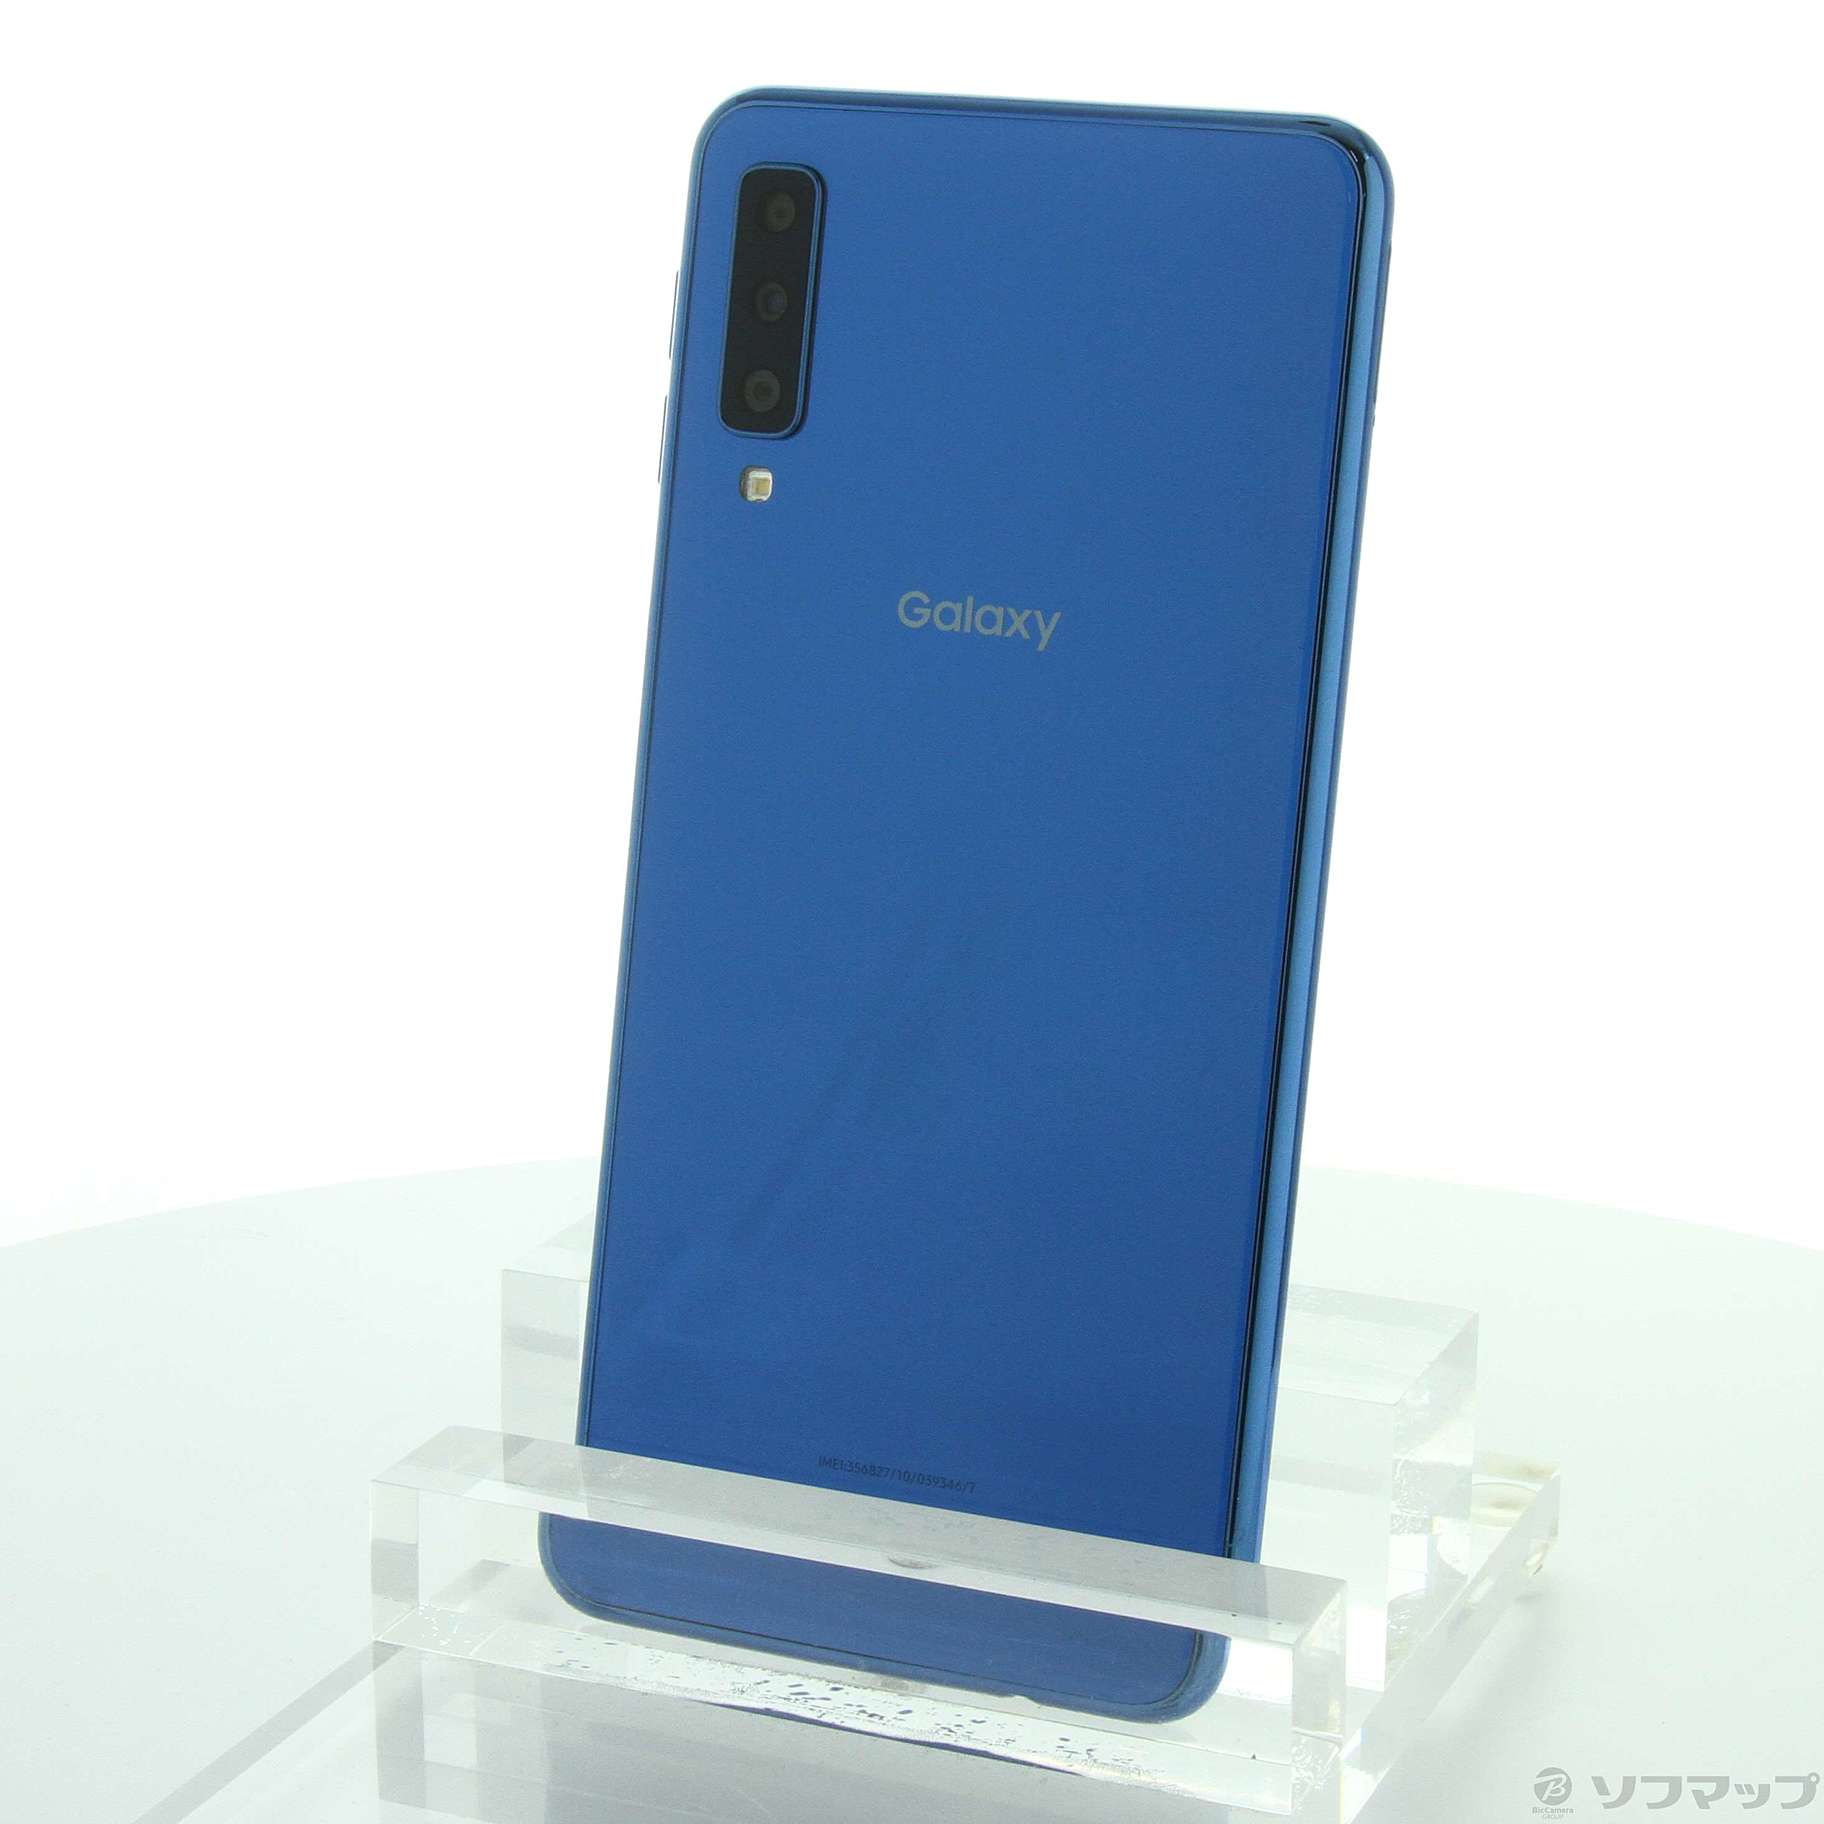 Galaxy A7 ブルー SM-A750C